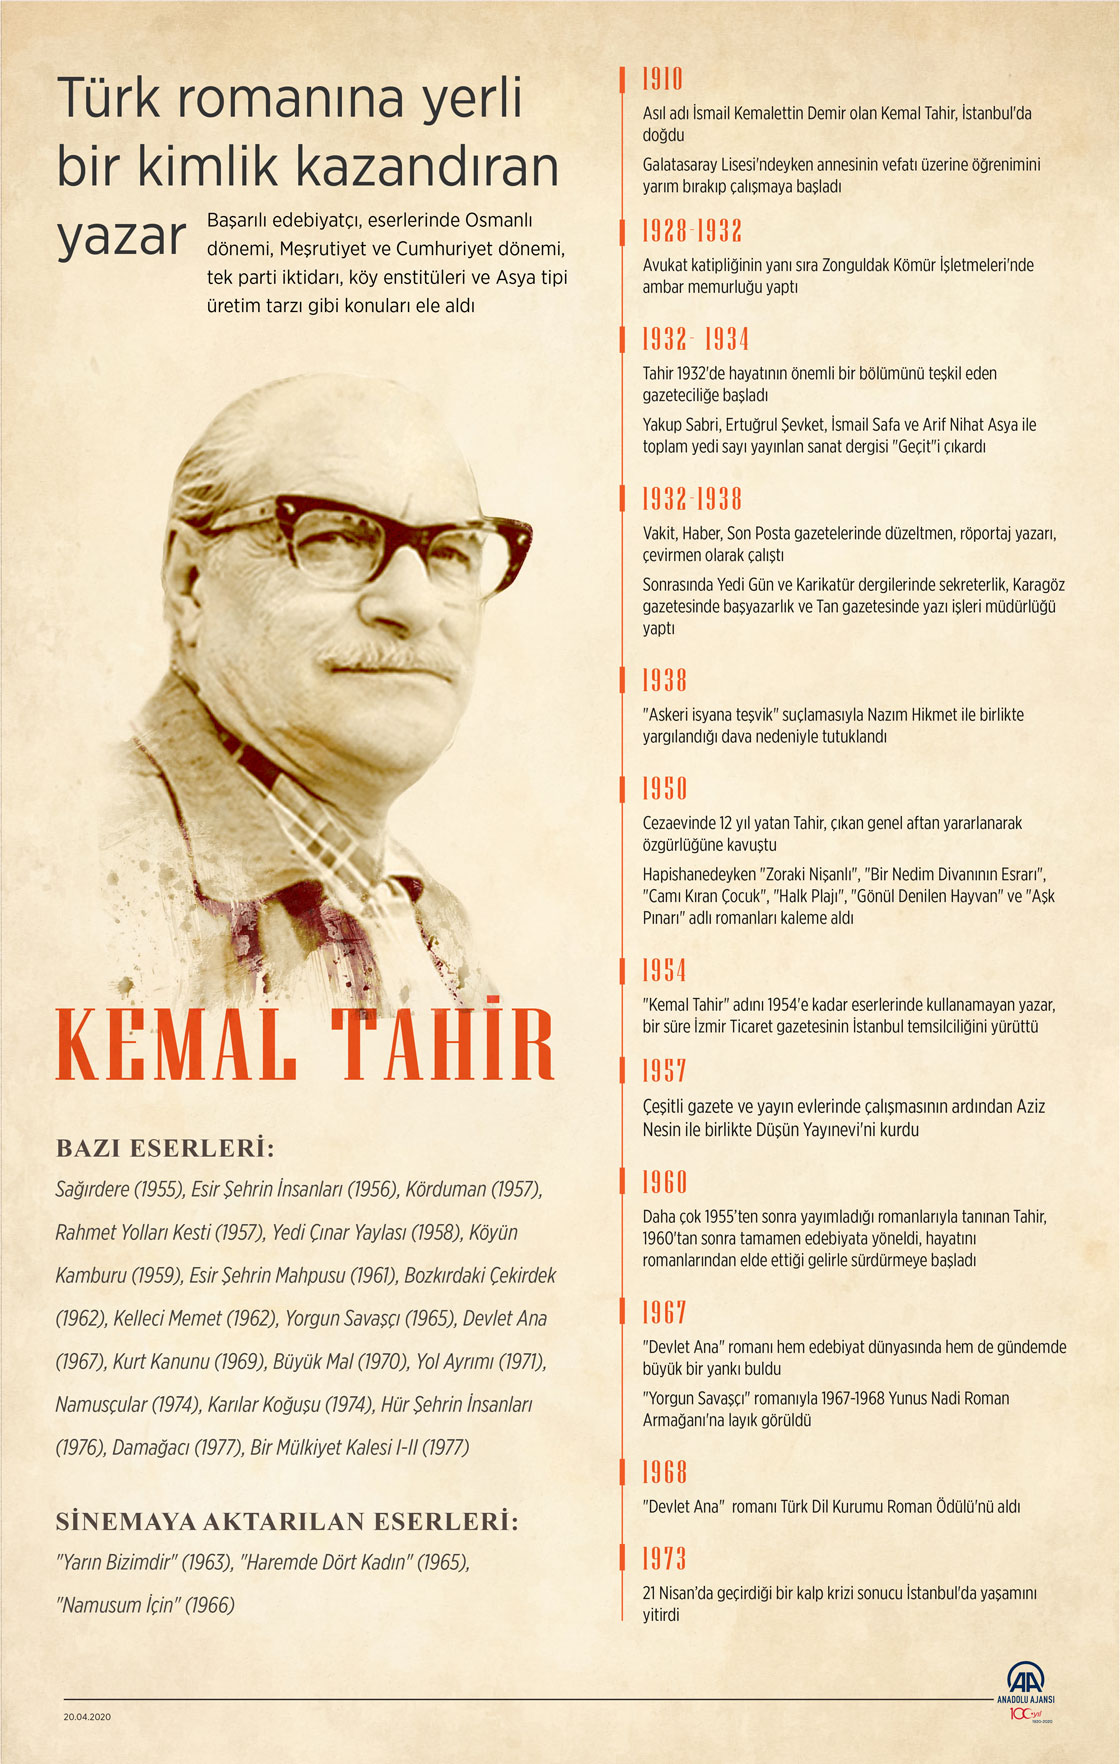 Türk romanına yerli bir kimlik kazandıran yazar: Kemal Tahir